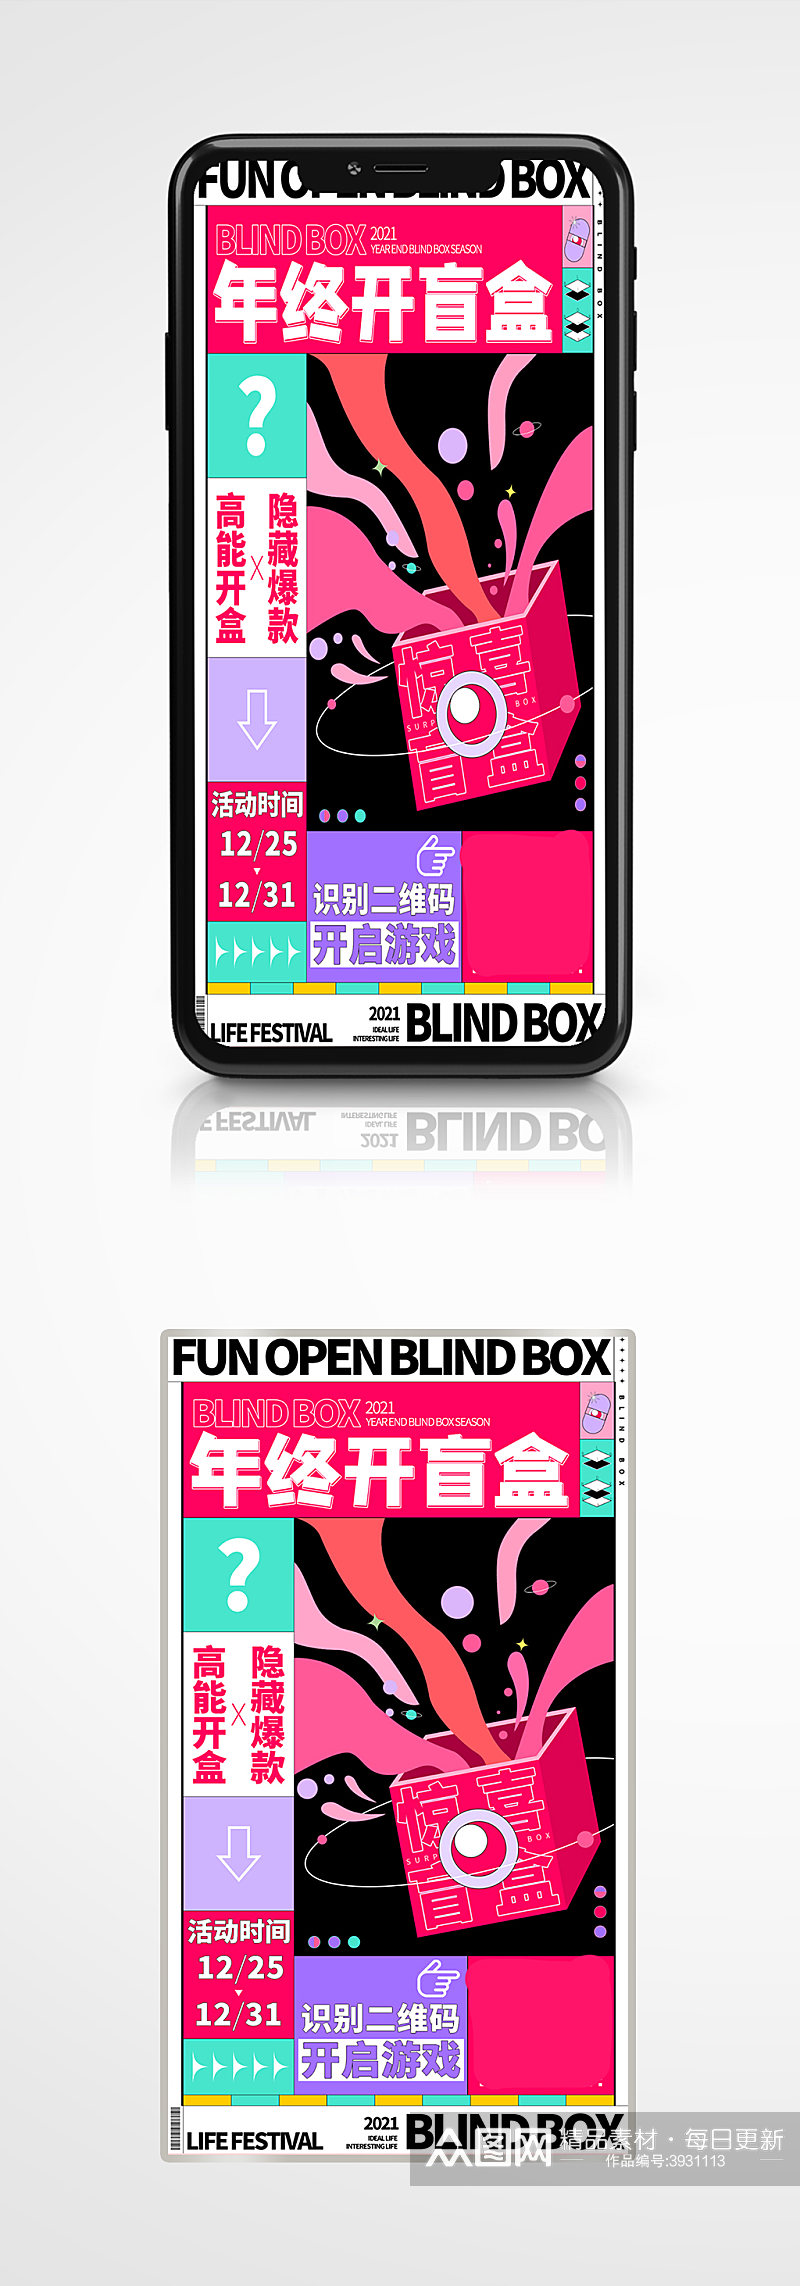 扁平撞色年底趣味活动盲盒手机海报促销素材